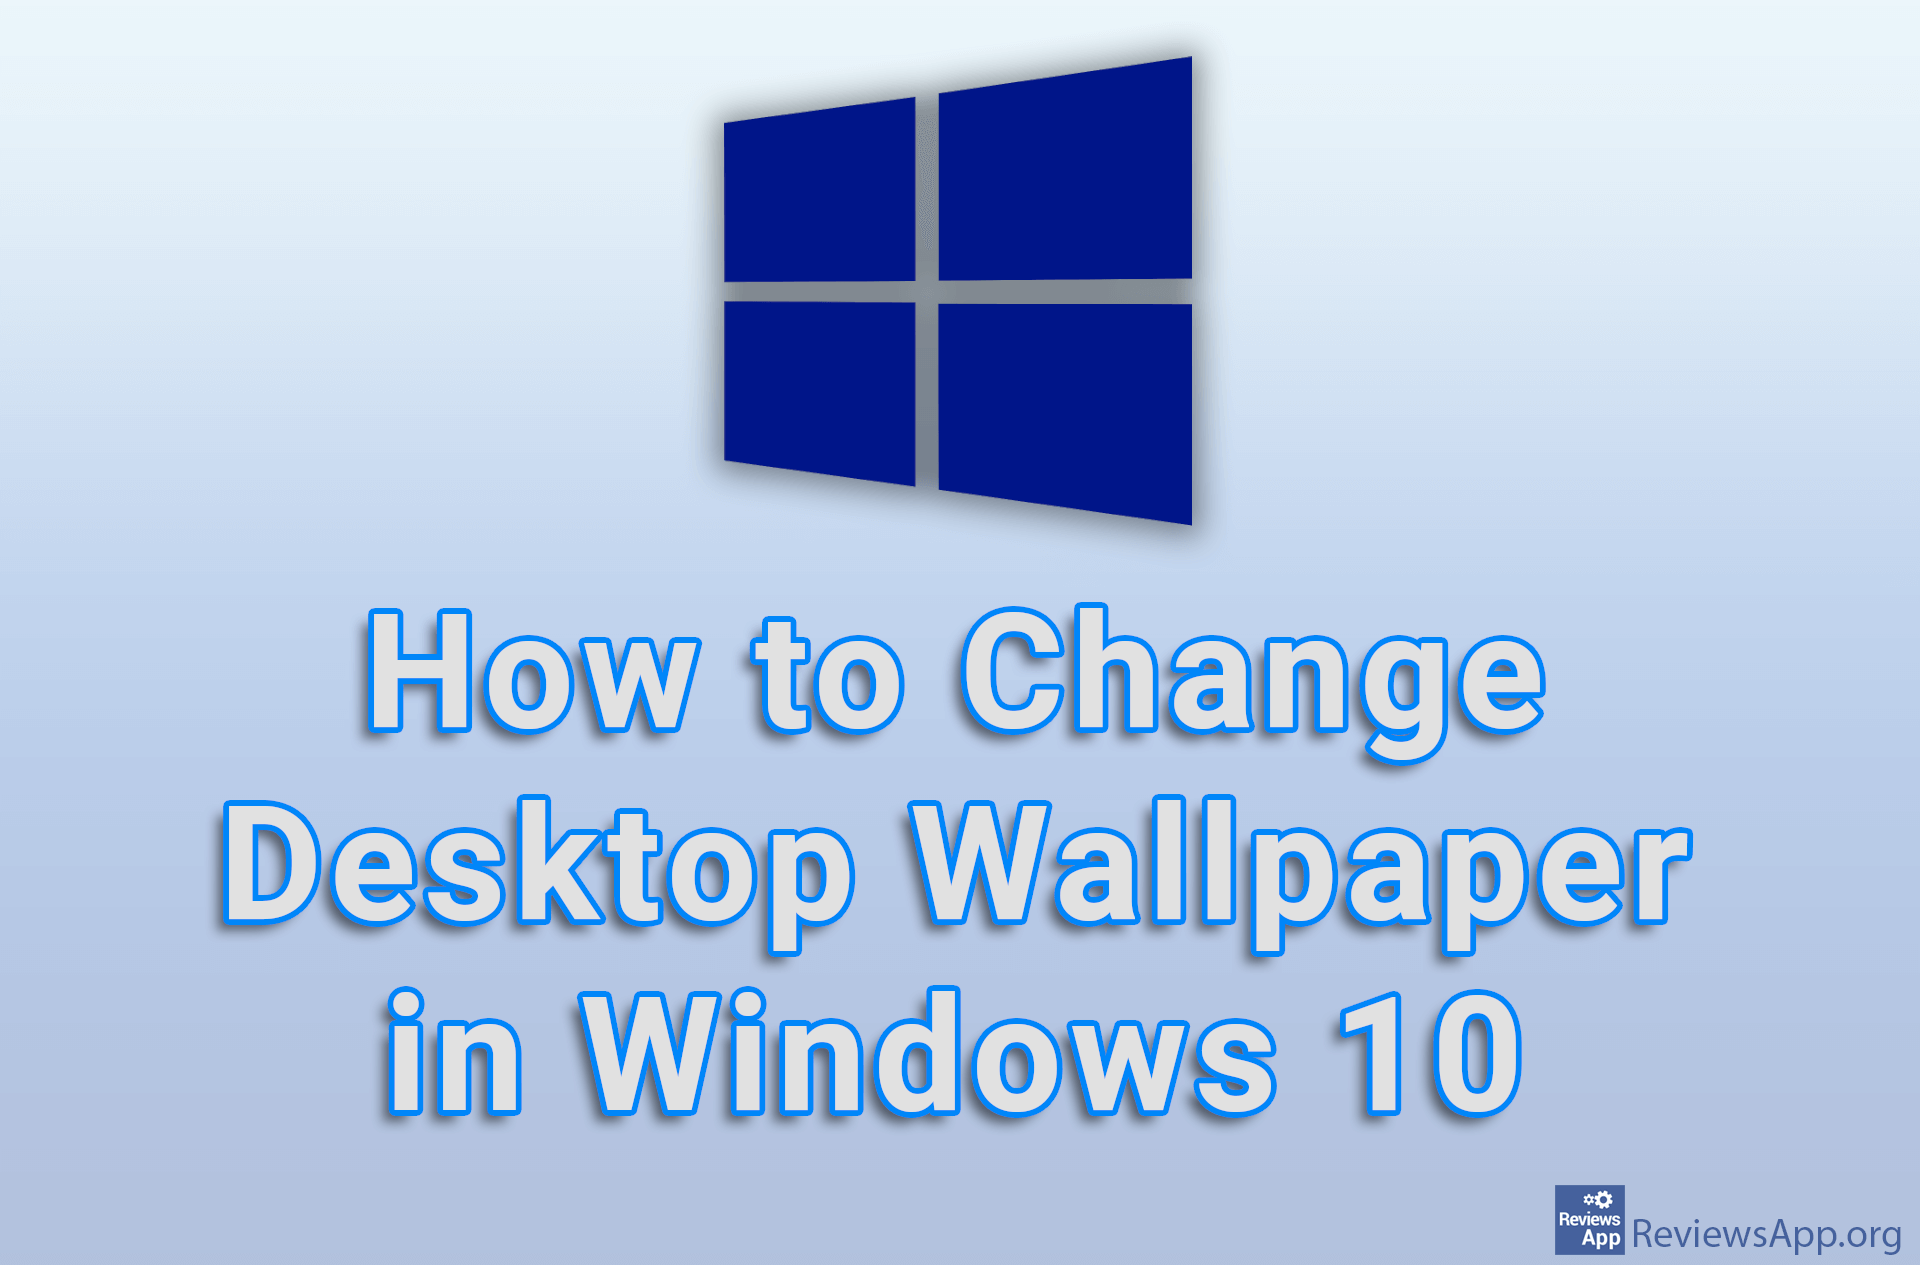 How to Change Desktop Wallpaper in Windows 10